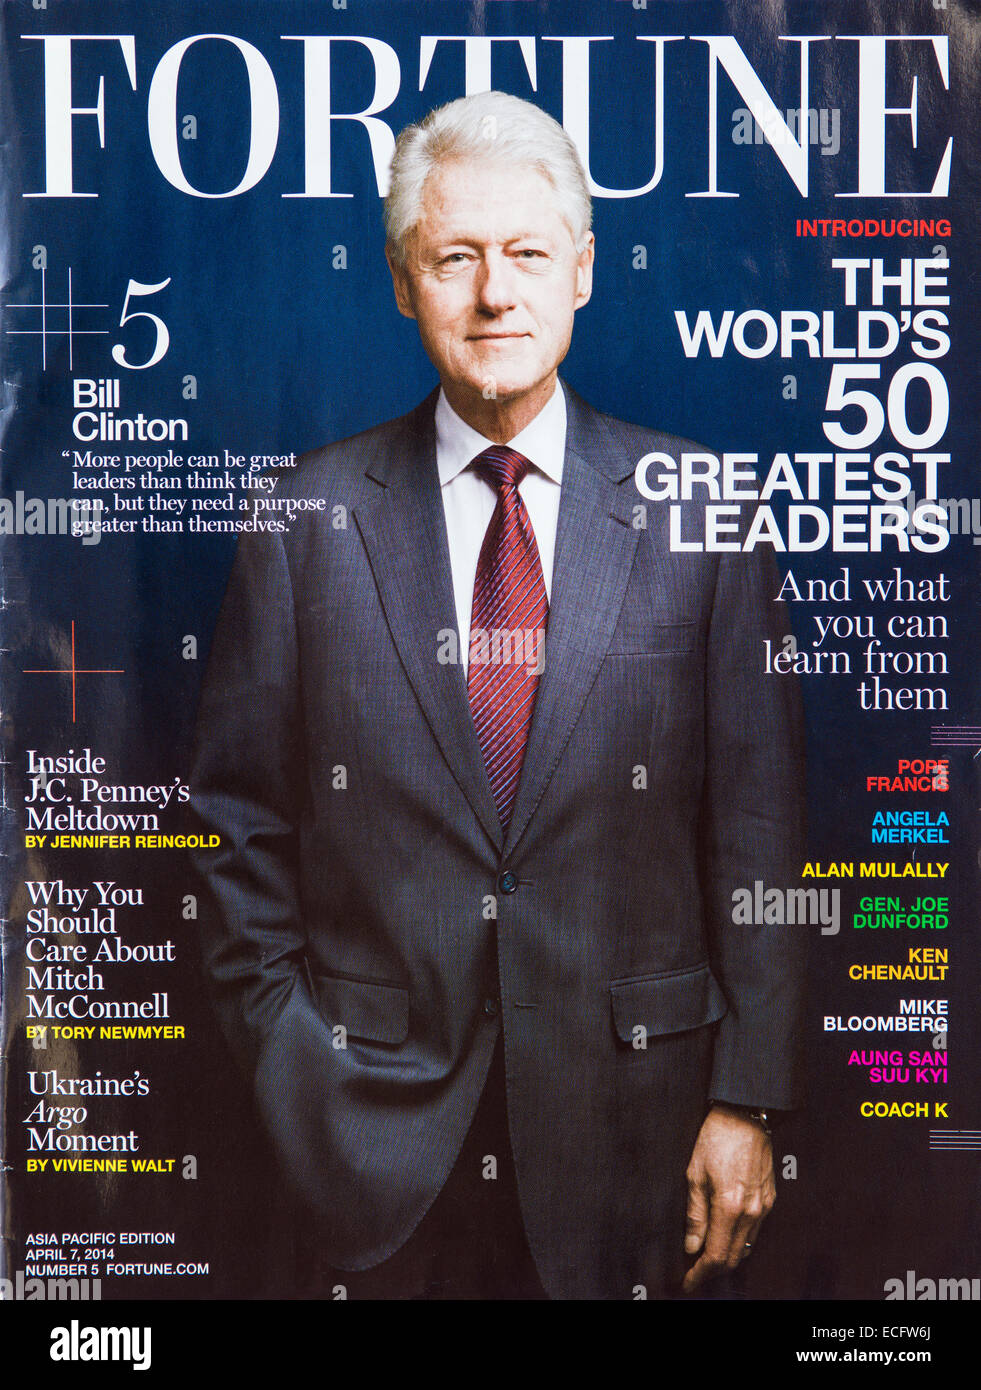 Bill Clinton on Fortune magazine cover Stock Photo